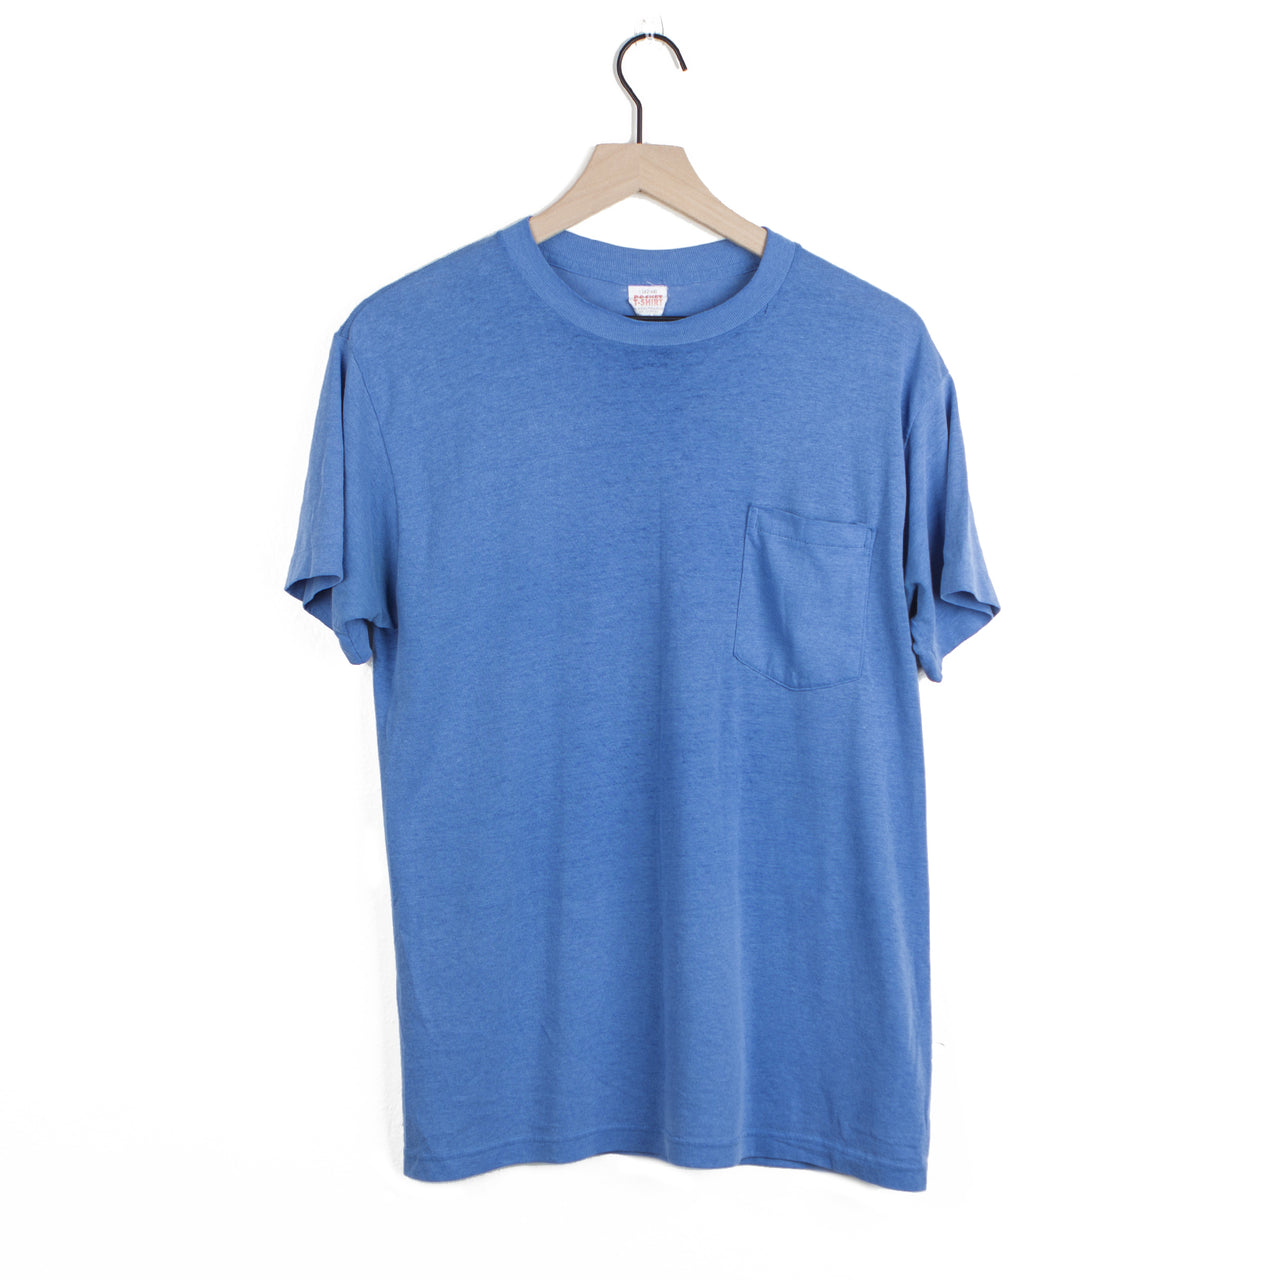 No. 89272 (Blue Kodel 50/50 Pocket T-Shirt)